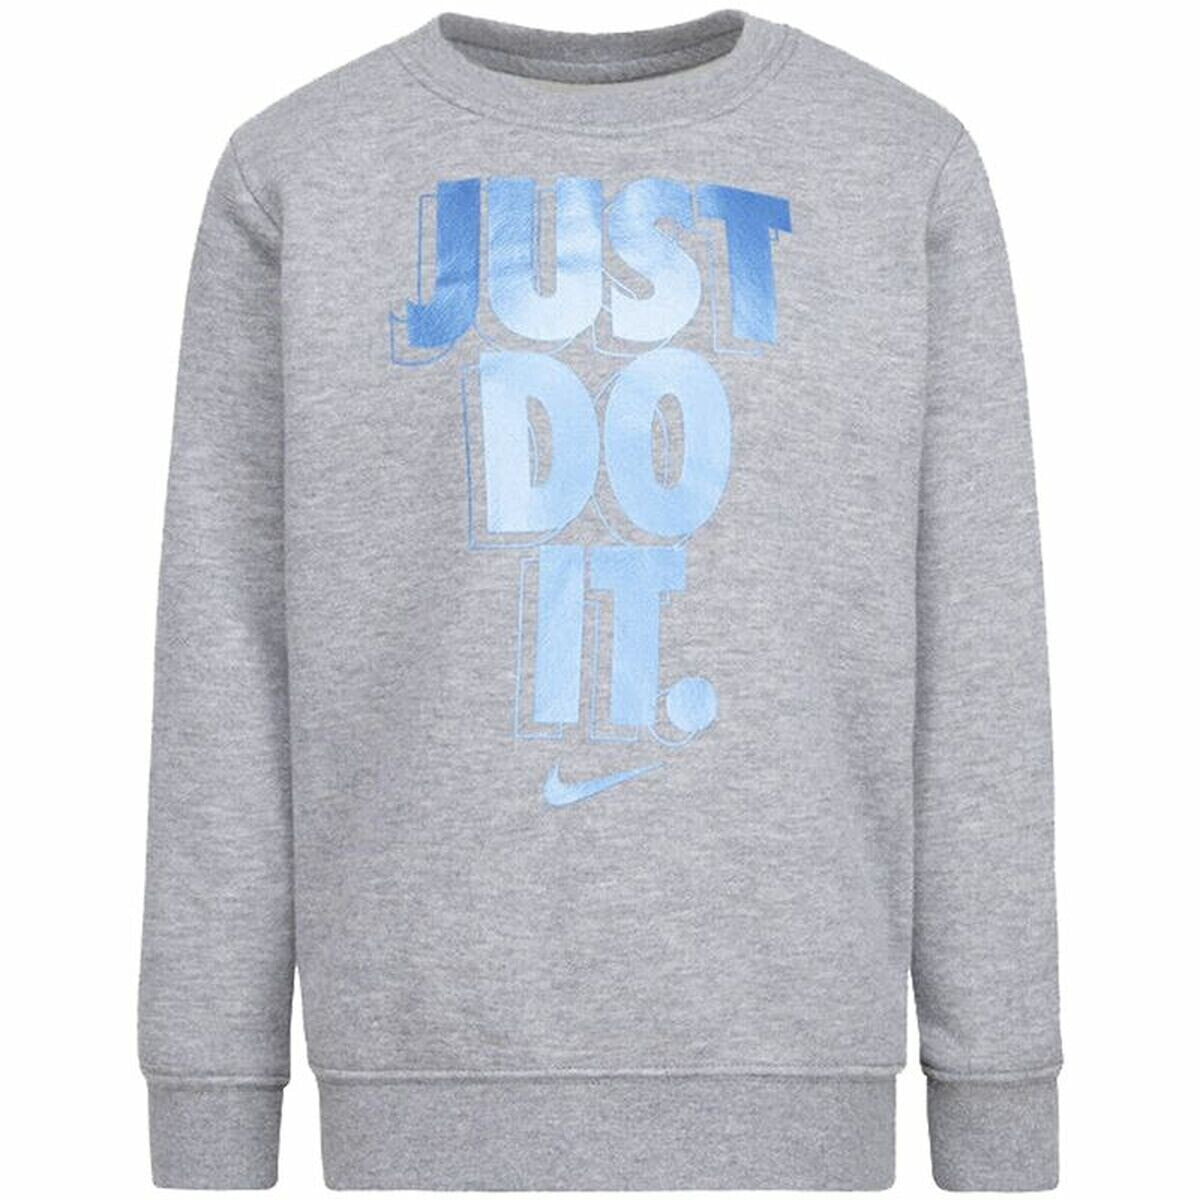 Children’s Sweatshirt without Hood Nike Gifting Grey